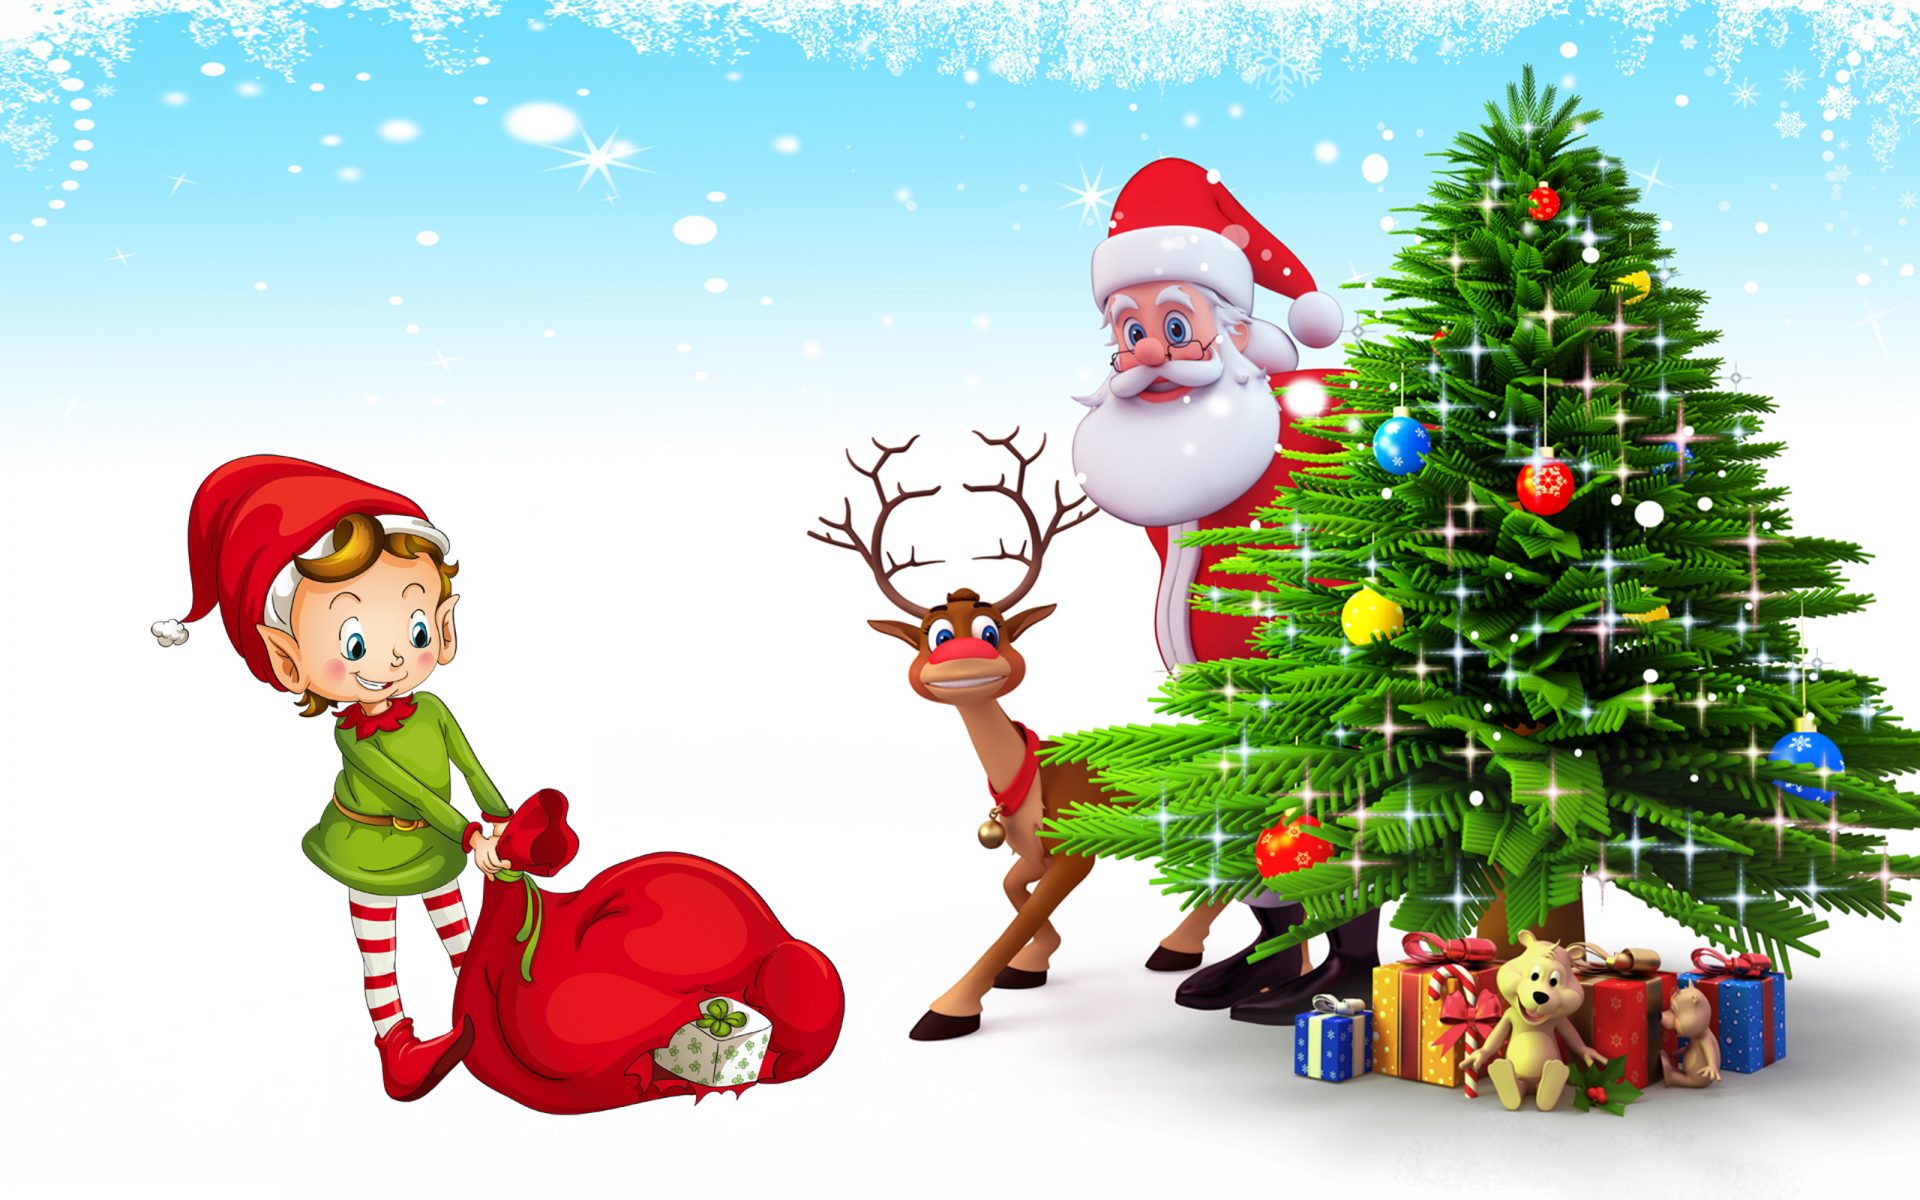 サンタクロース壁紙無料ダウンロード,クリスマス,サンタクロース,クリスマスツリー,クリスマス・イブ,架空の人物